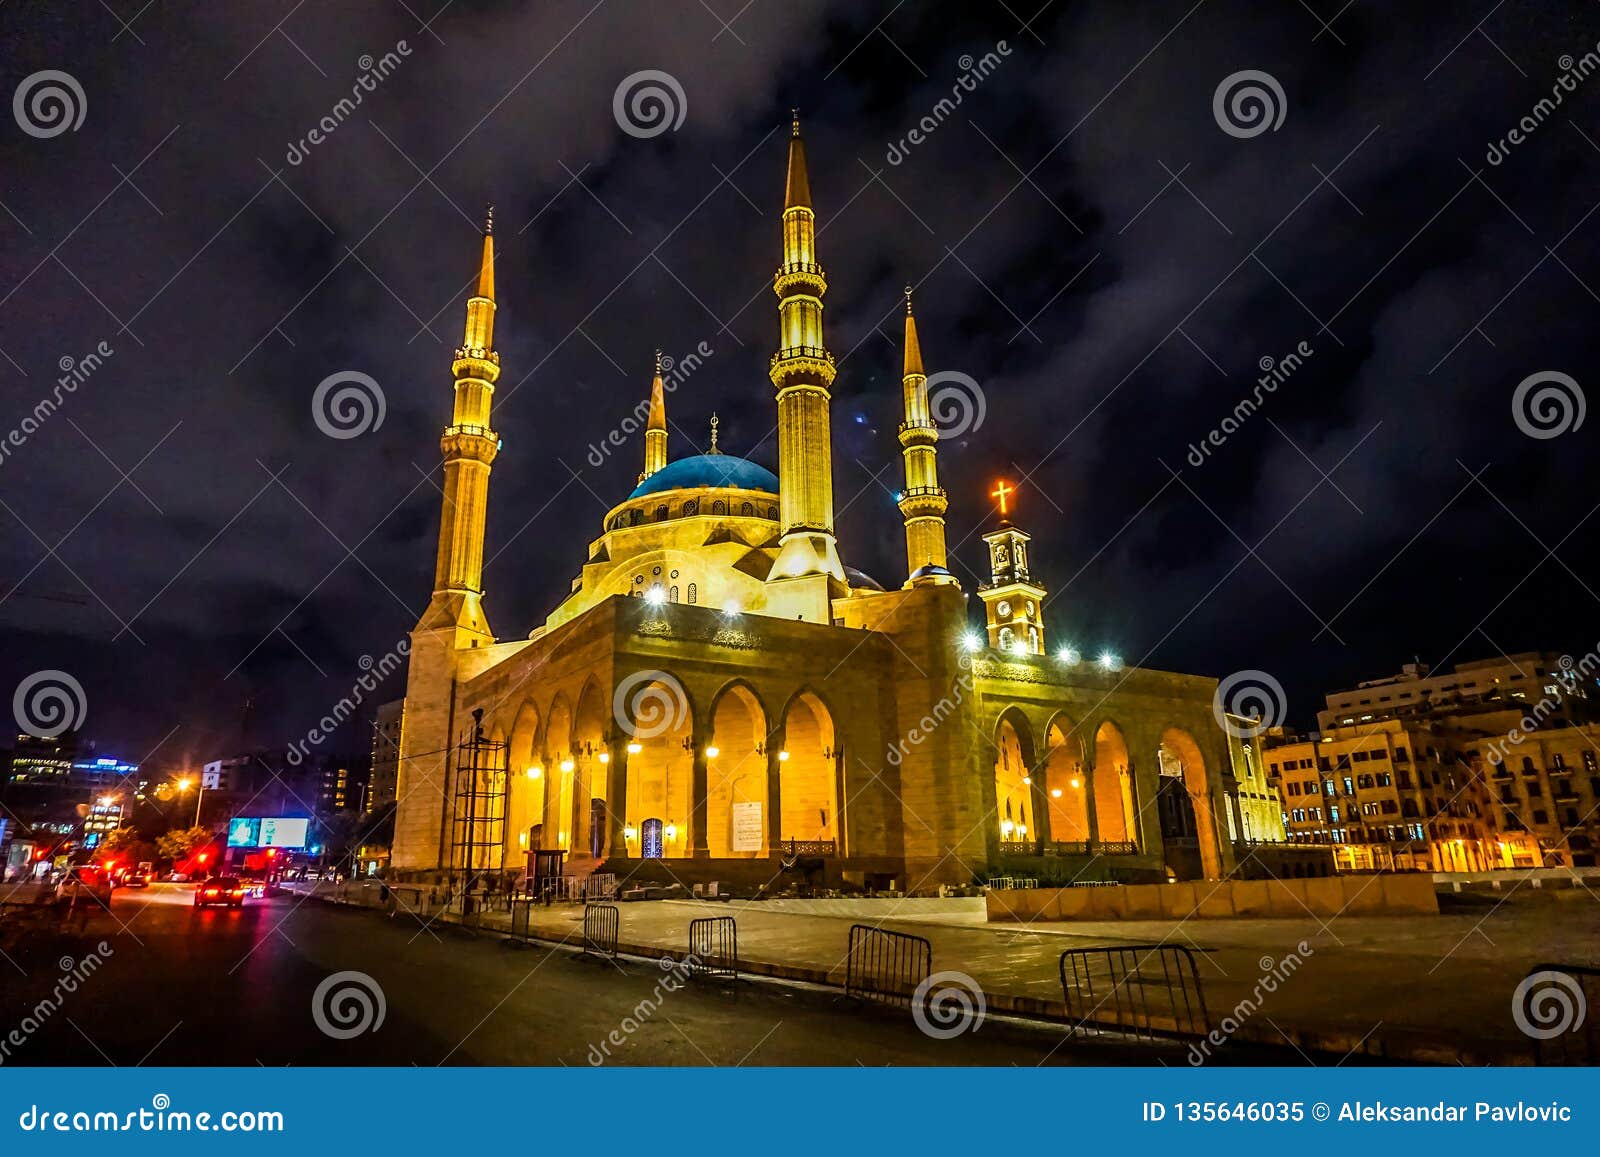 beirut mohammad al amin mosque 03